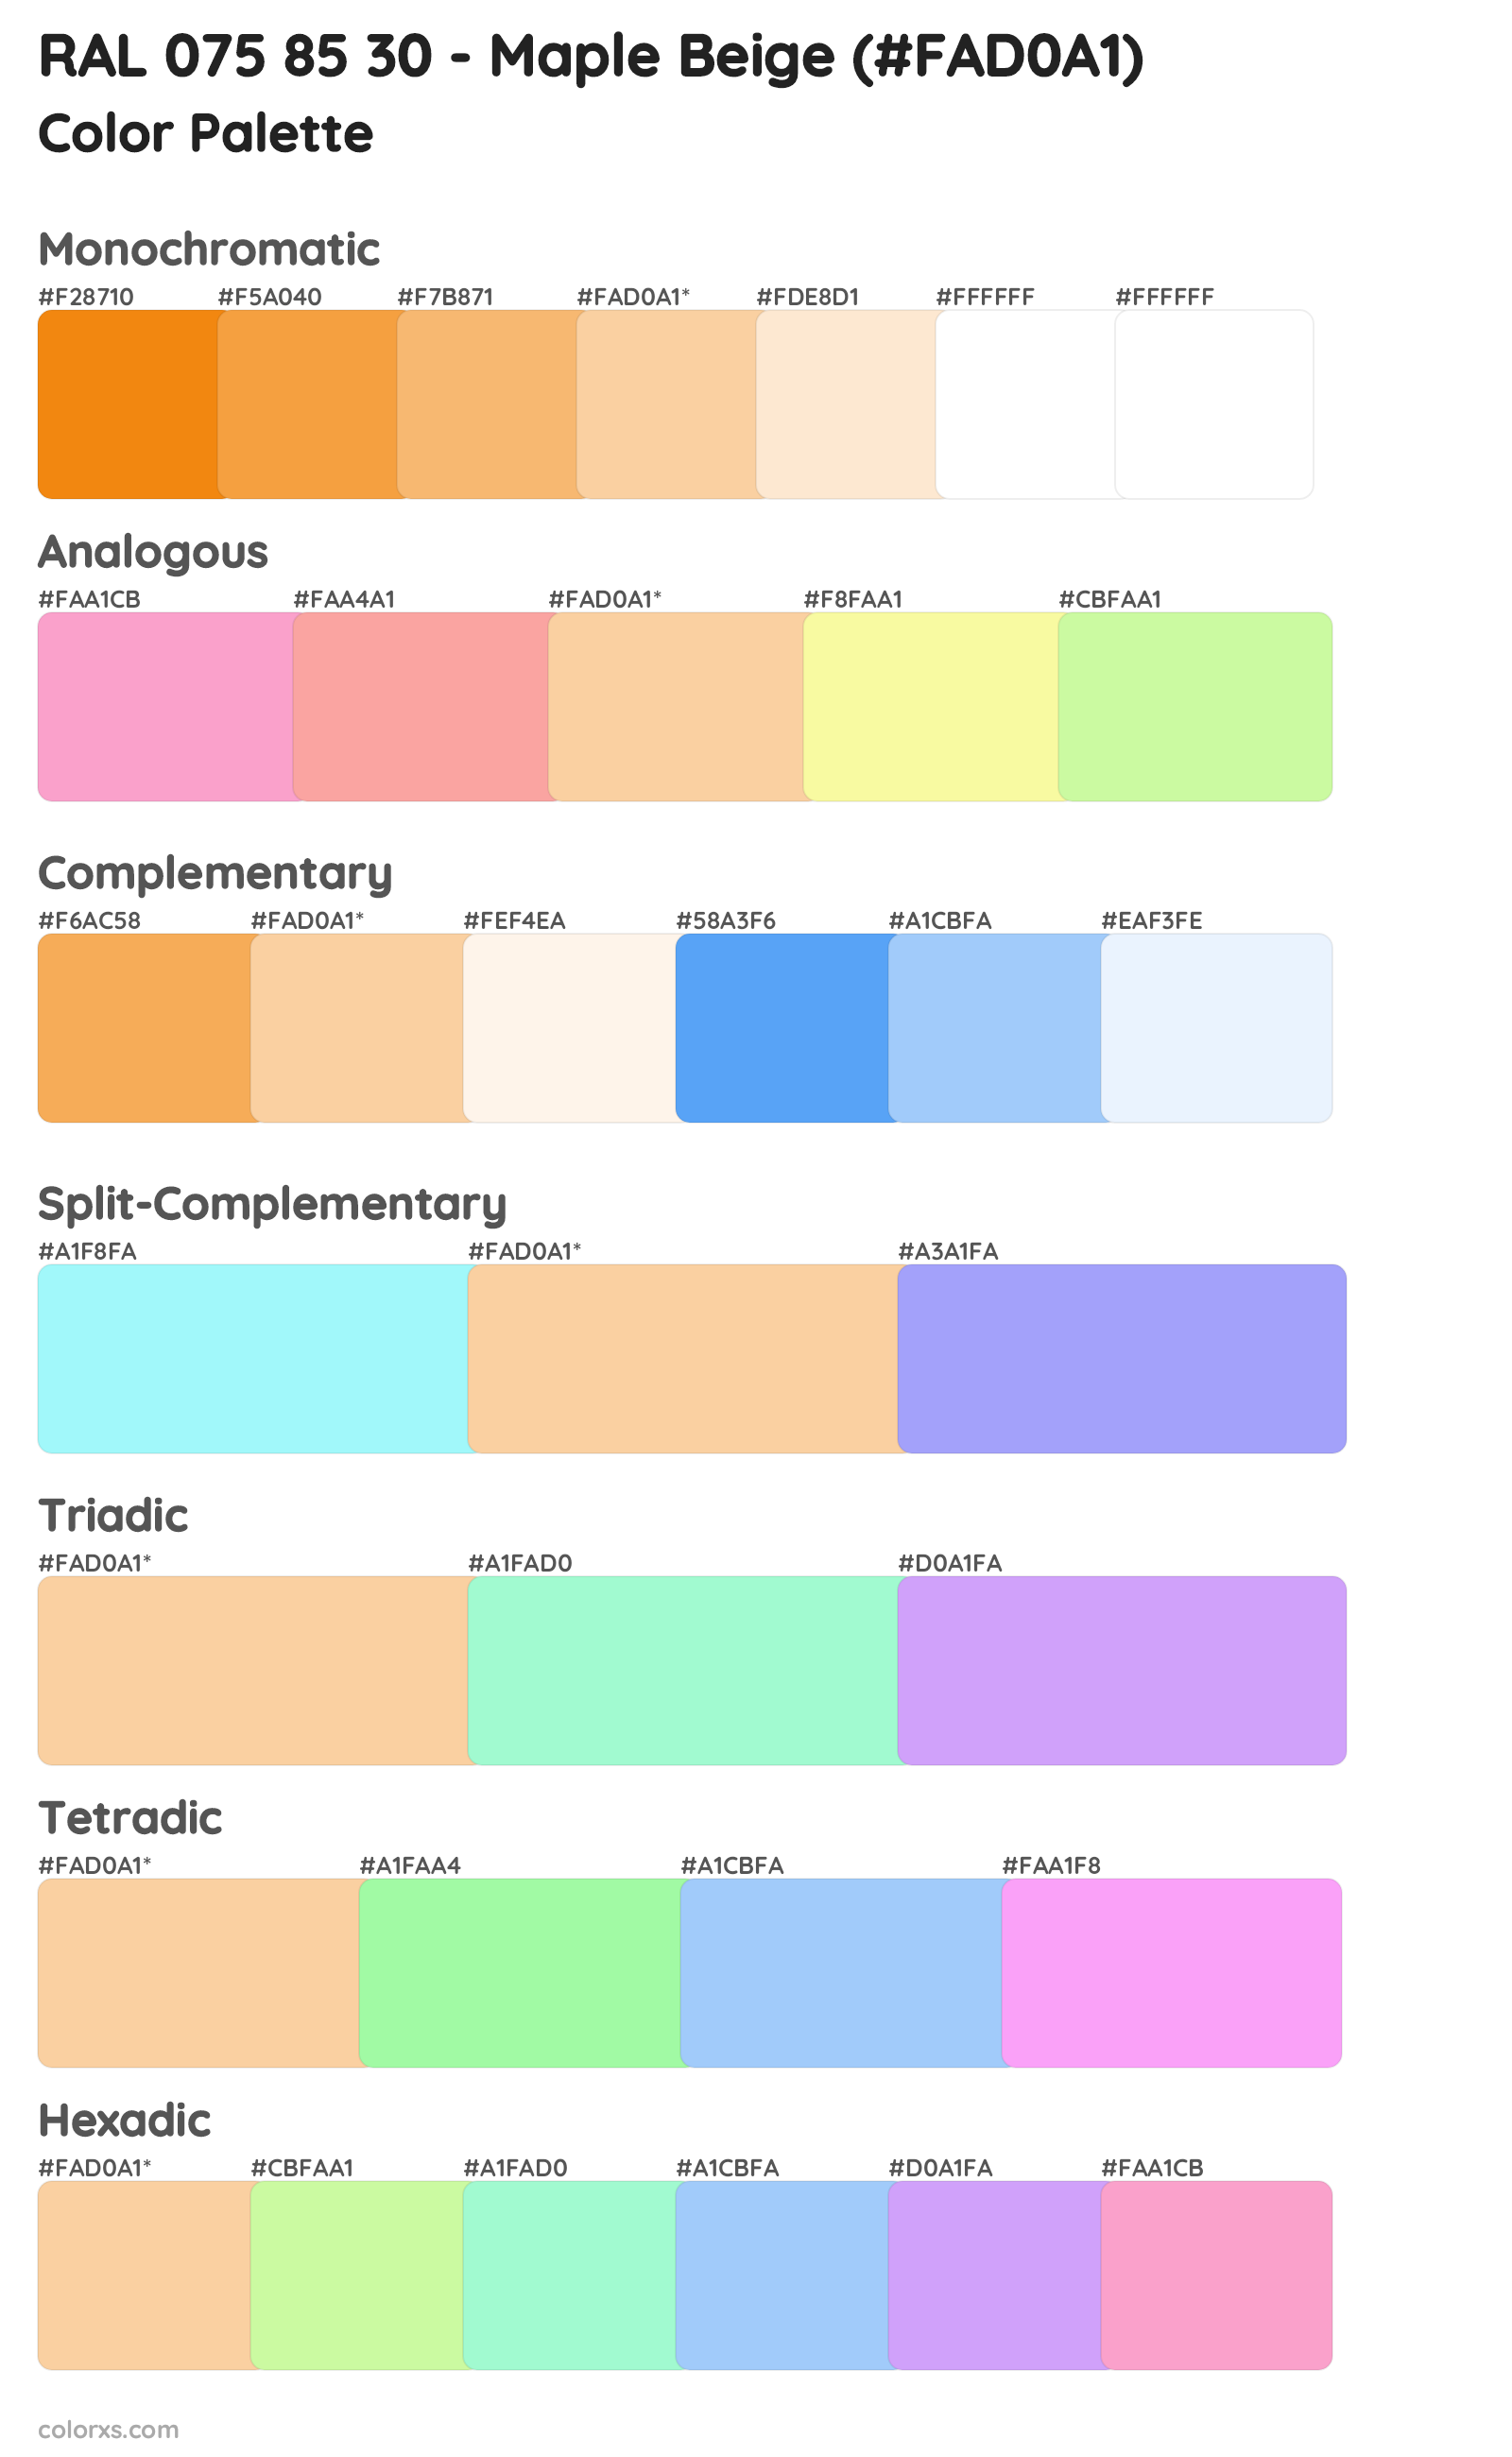 RAL 075 85 30 - Maple Beige Color Scheme Palettes